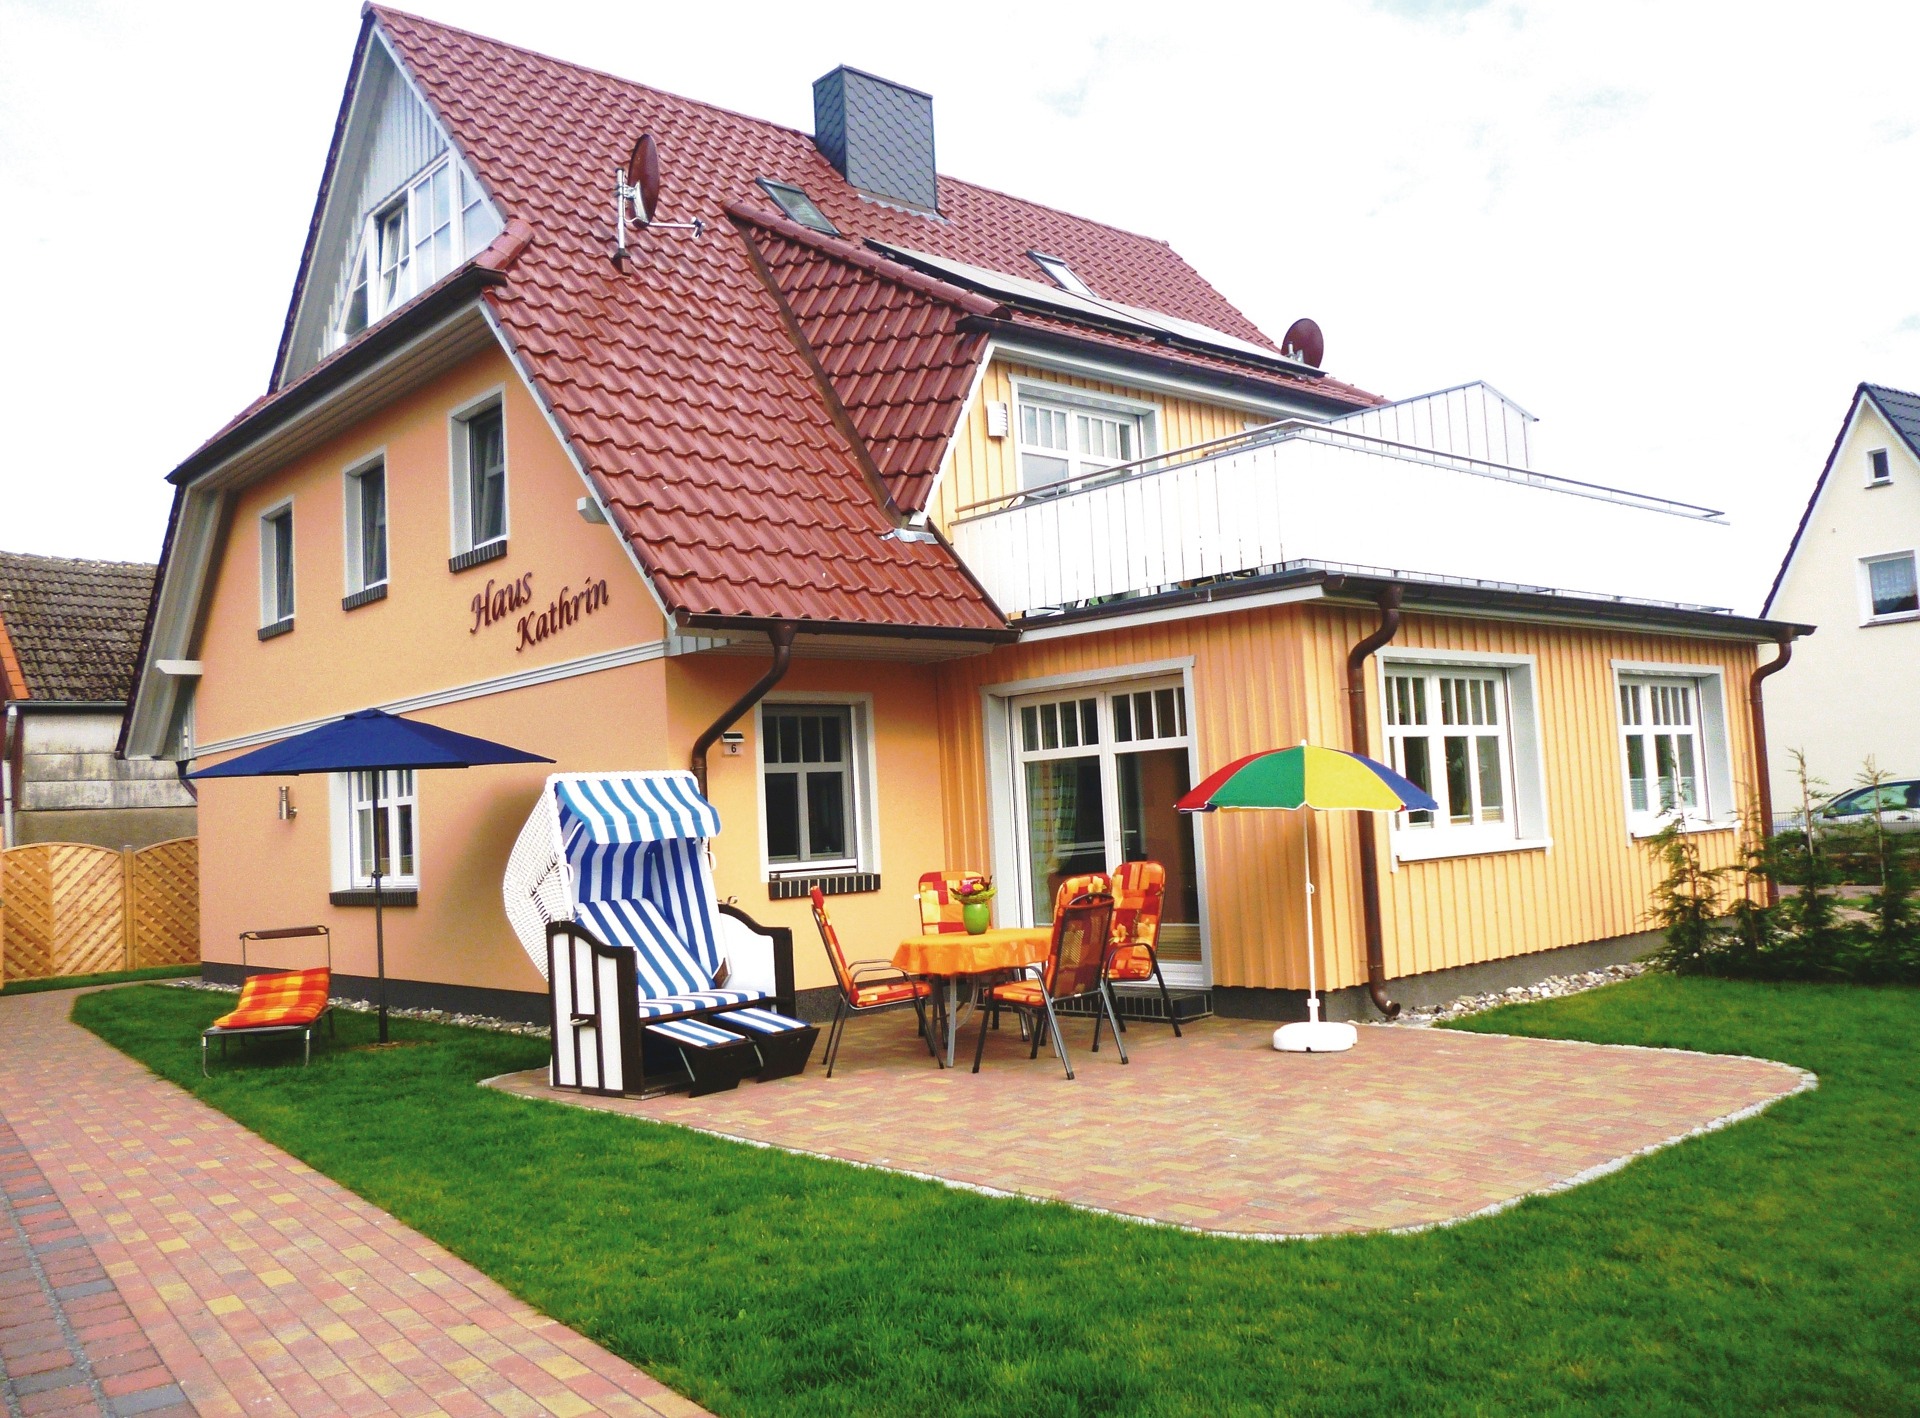 Haus Kathrin Ferienhaus in Zingst Ostseeheilbad